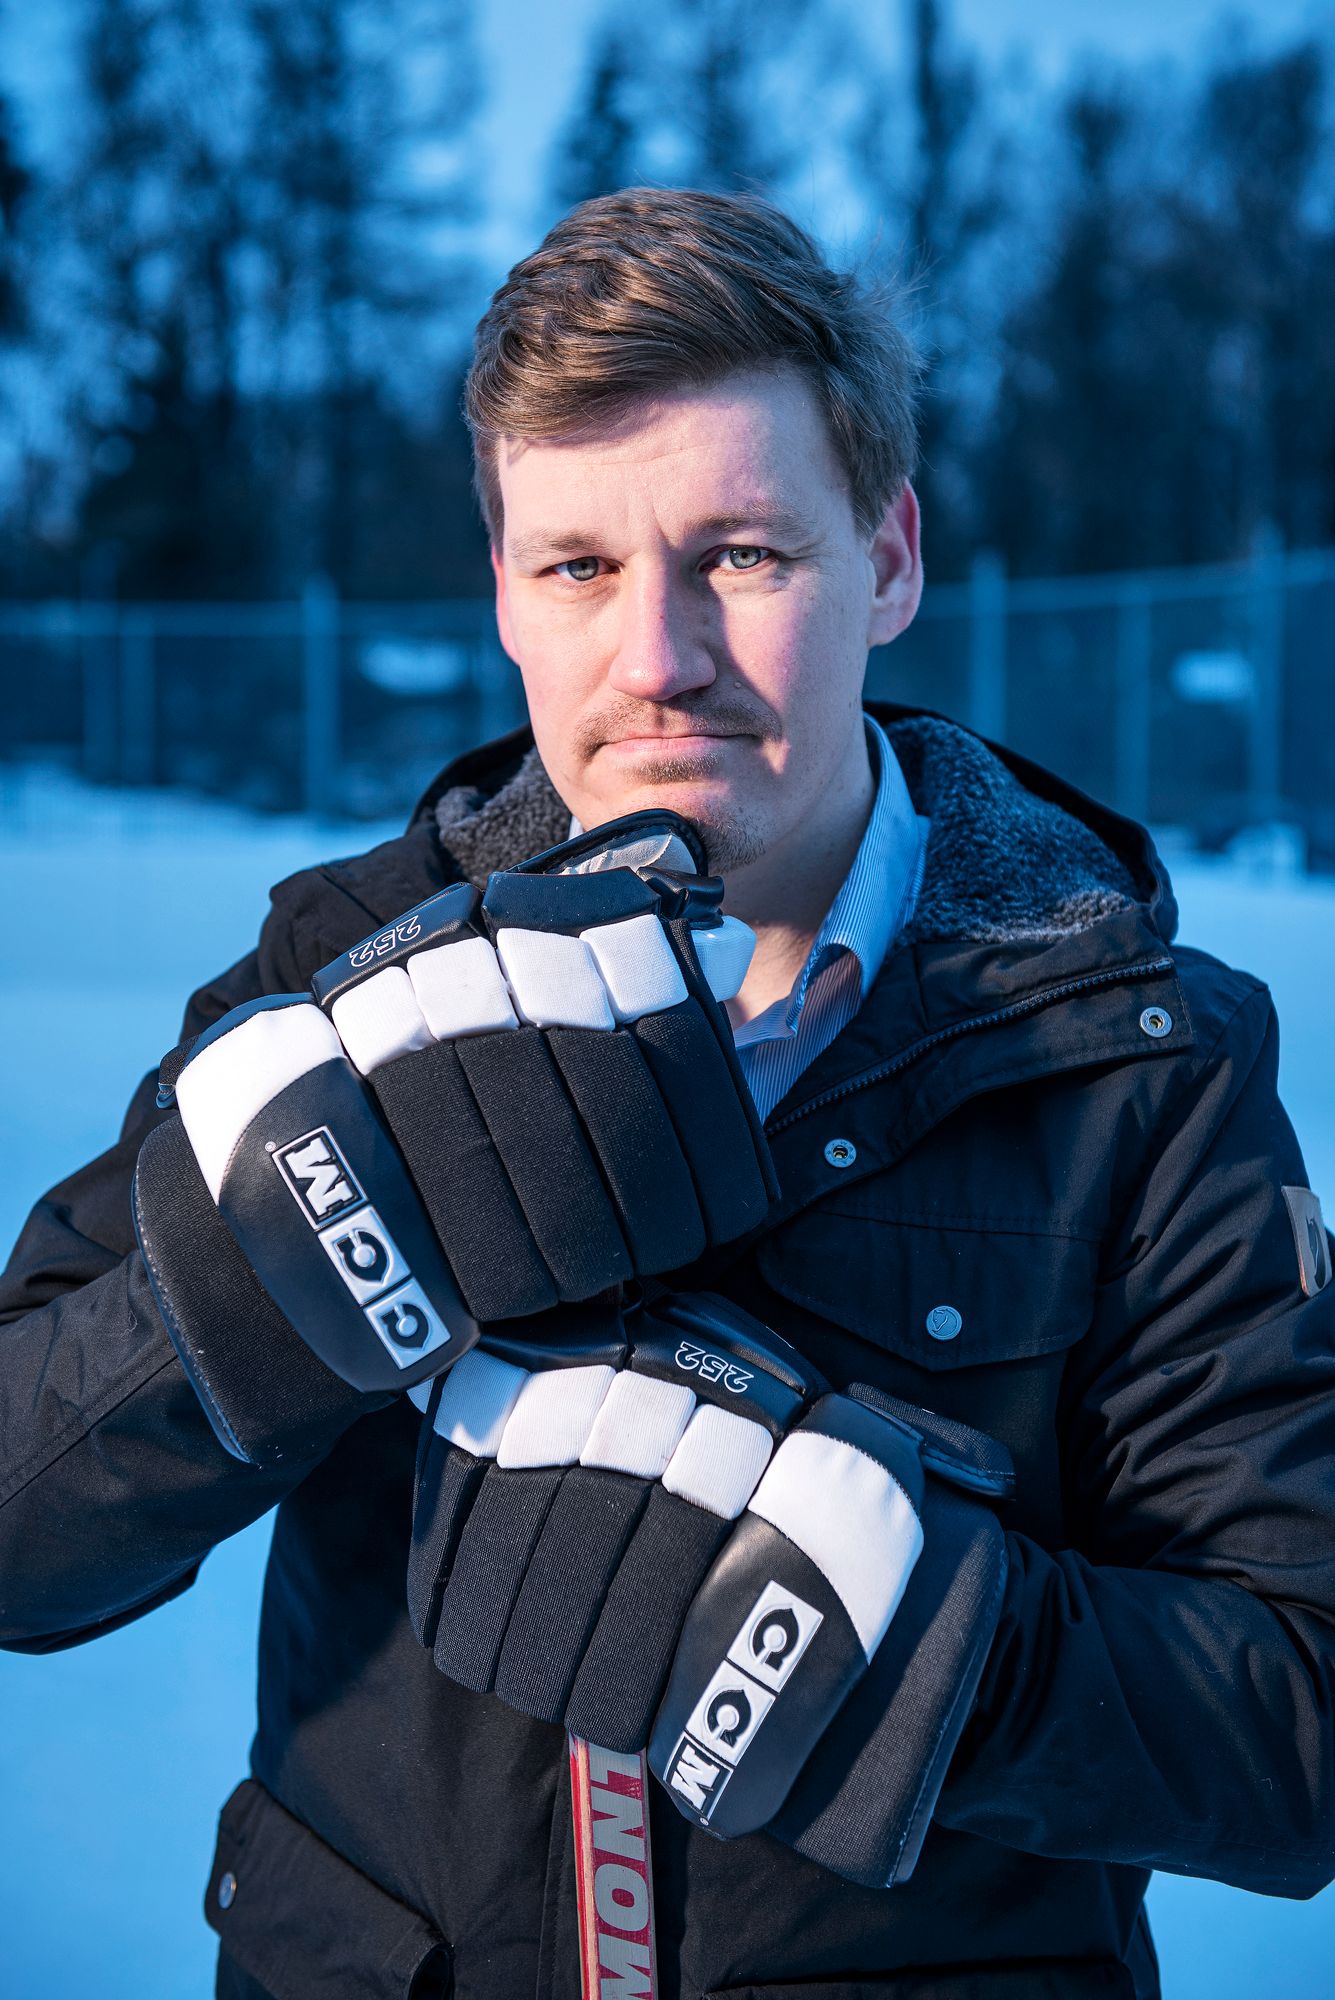 Juha Hartikaisen mukaantörkeimmät jääkiekkokaukalon tapahtumat voivat joskus ylittää rikosoikeuden kynnyksen. © Vesa Tyni